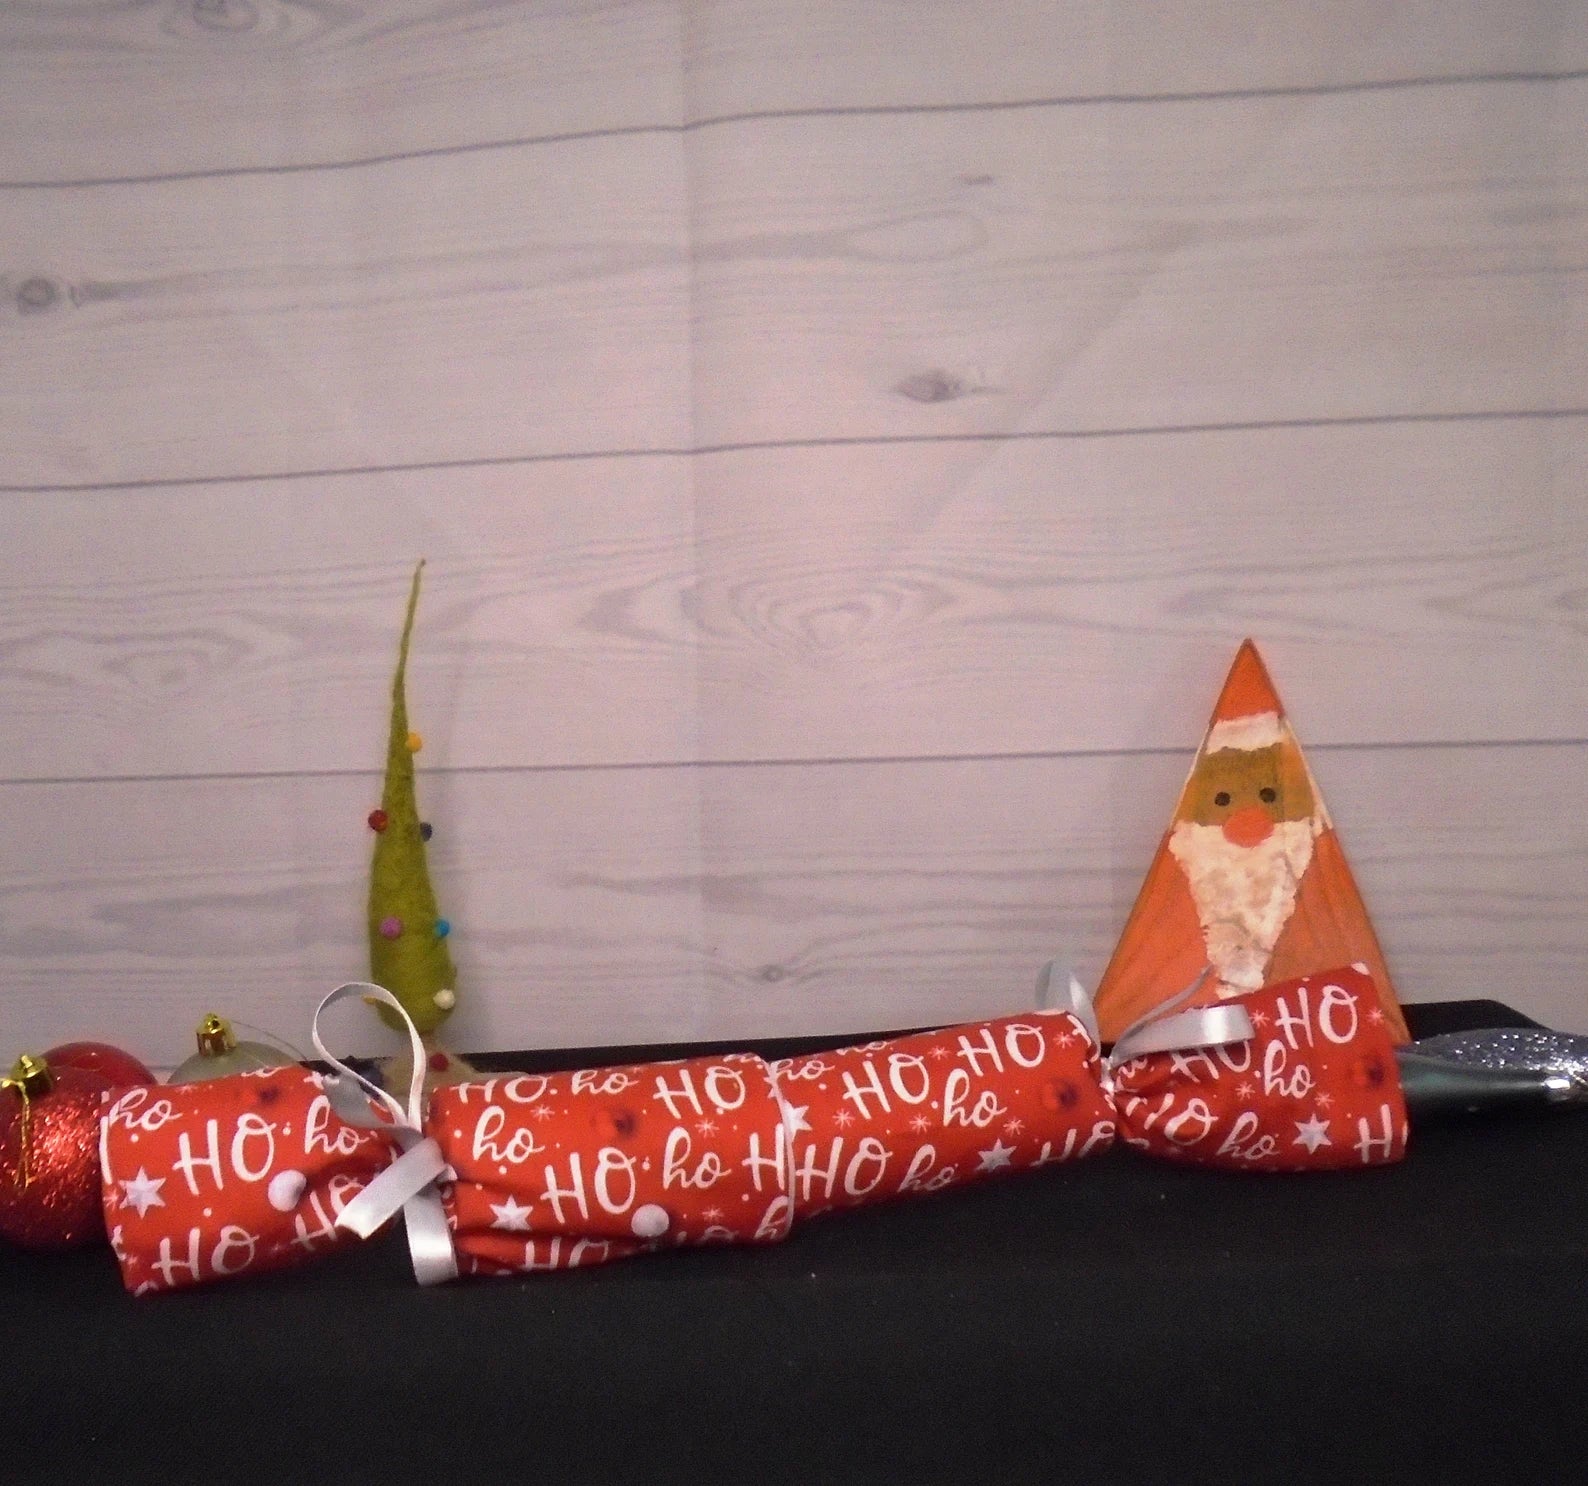 Ho Ho Ho Fabric Reusable Christmas Cracker Pullable Eco Friendly Crackers Zero Waste